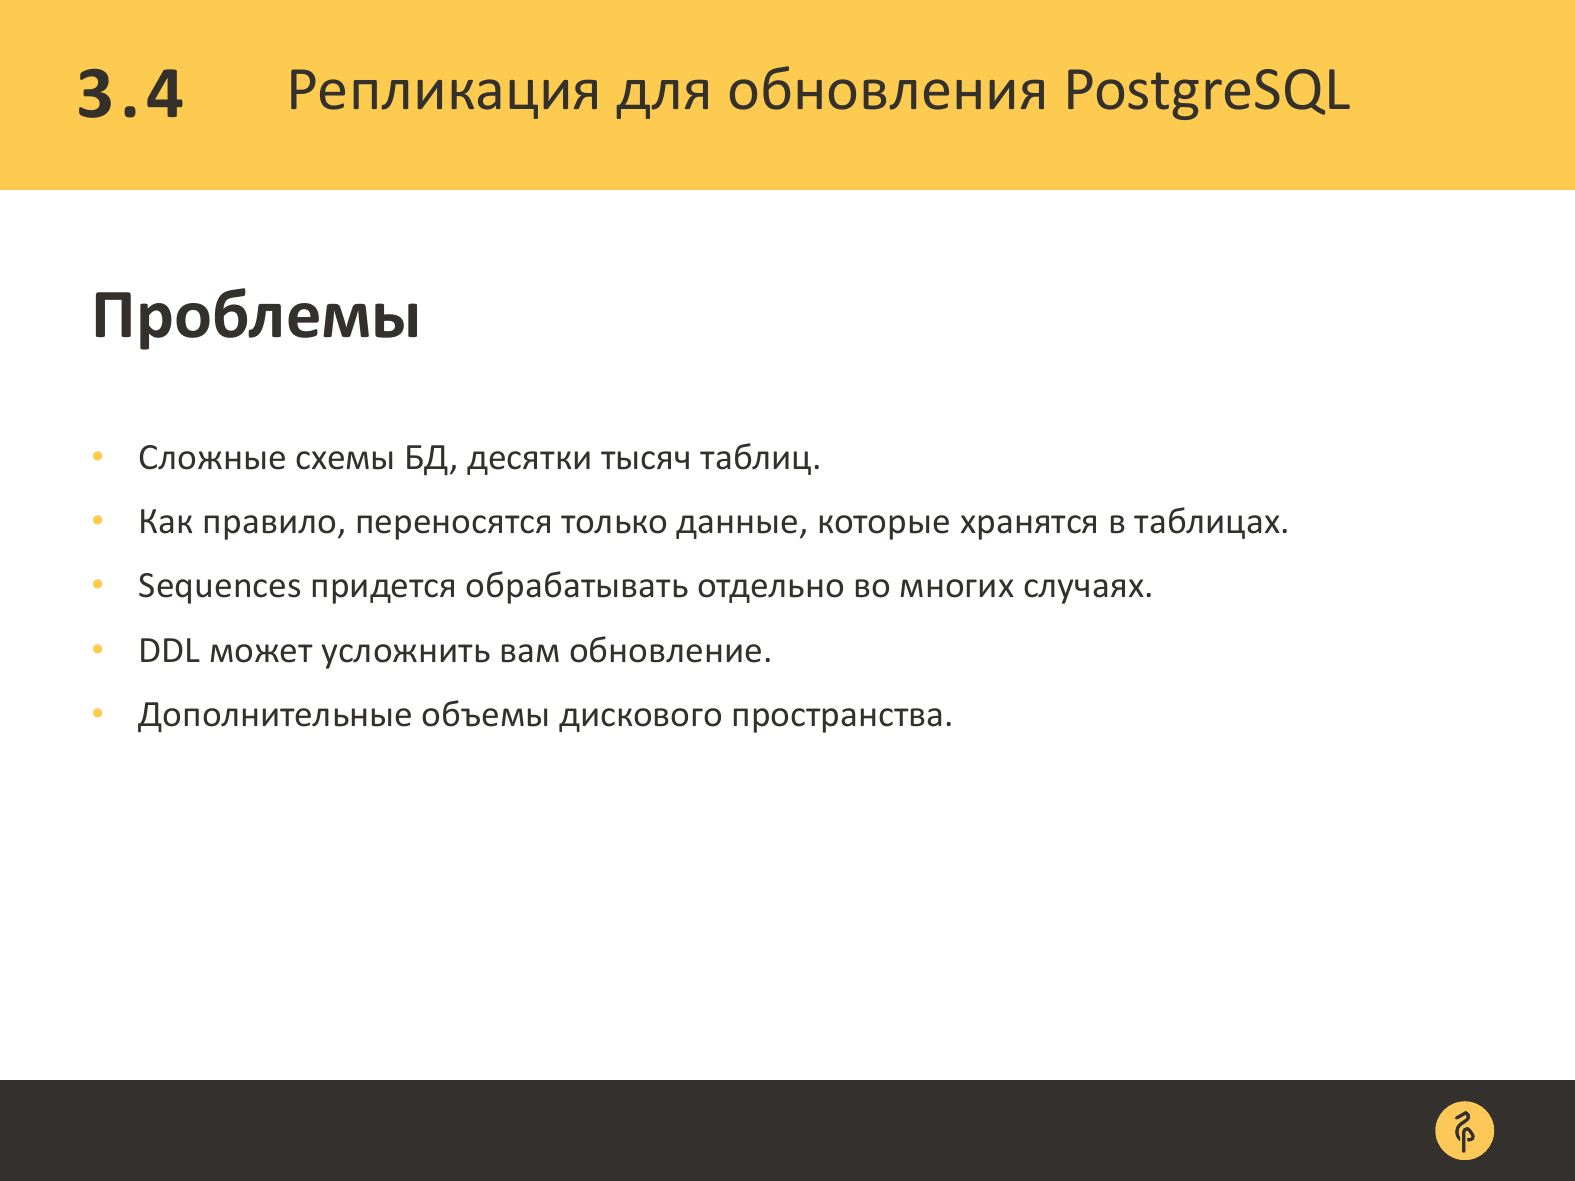 Практика обновления версий PostgreSQL. Андрей Сальников - 26